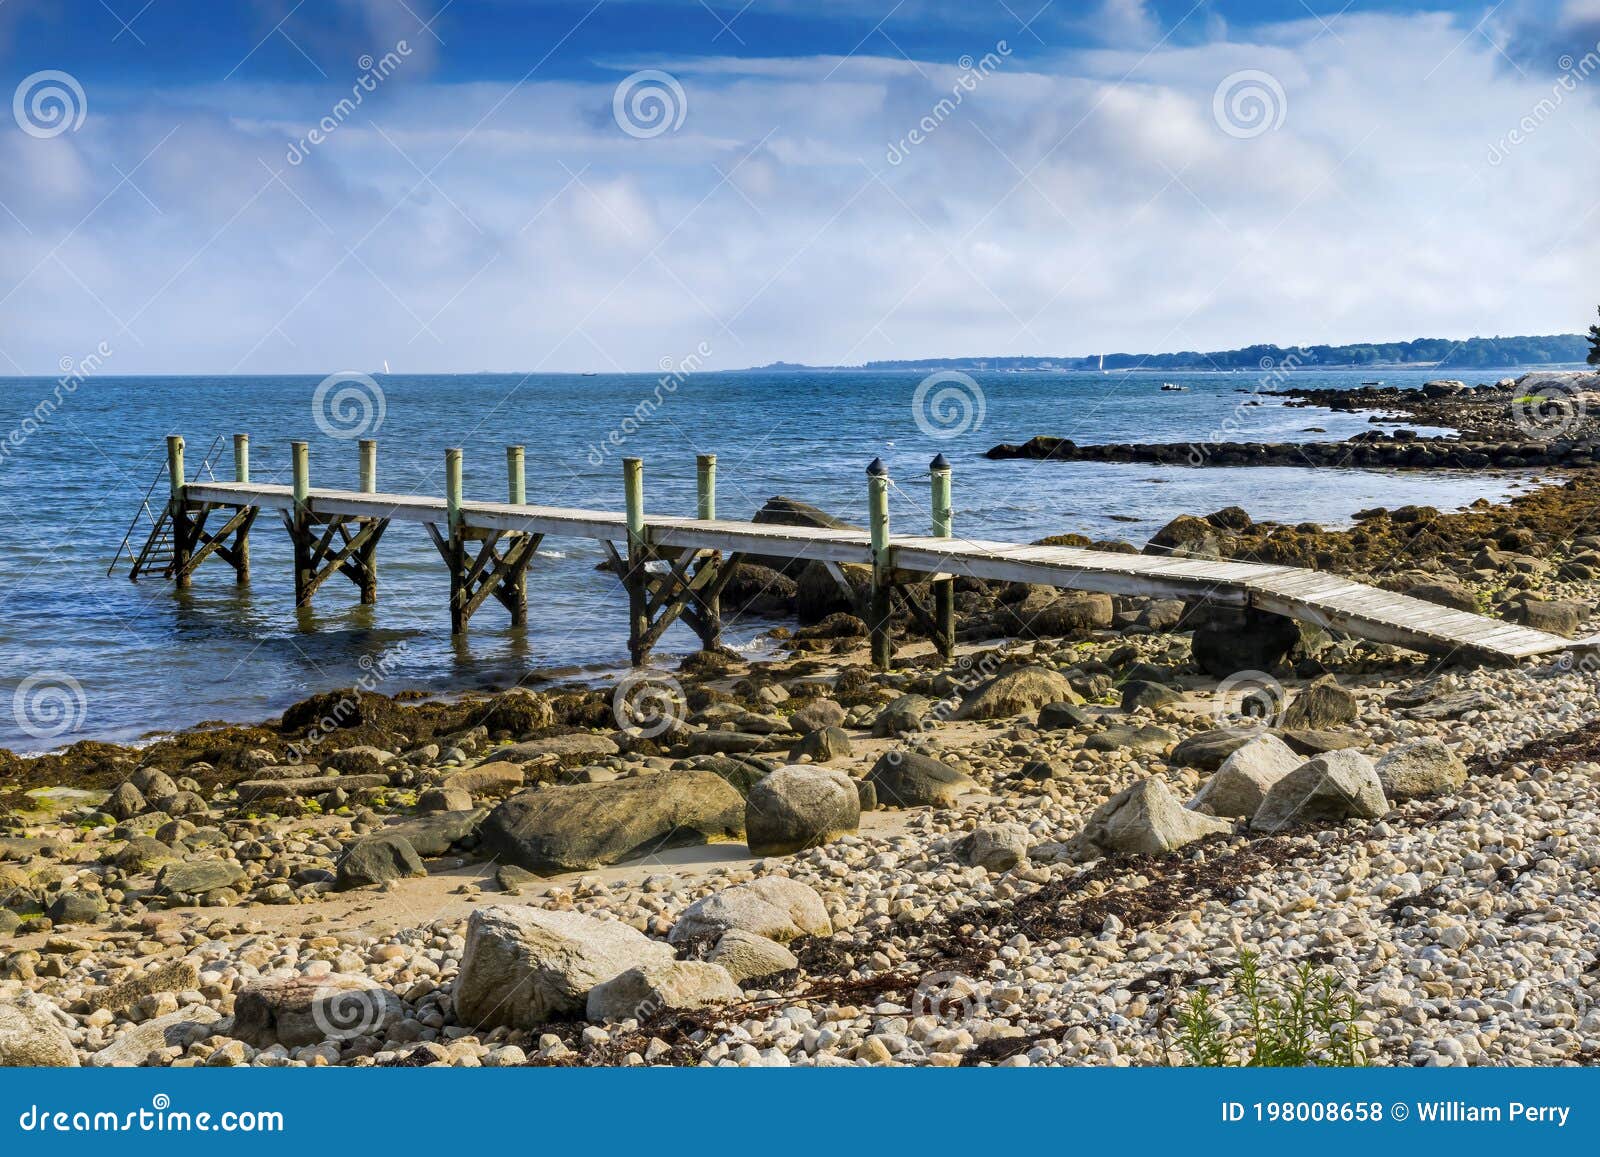 stony beach pier padanaram dartmouth massachusetts